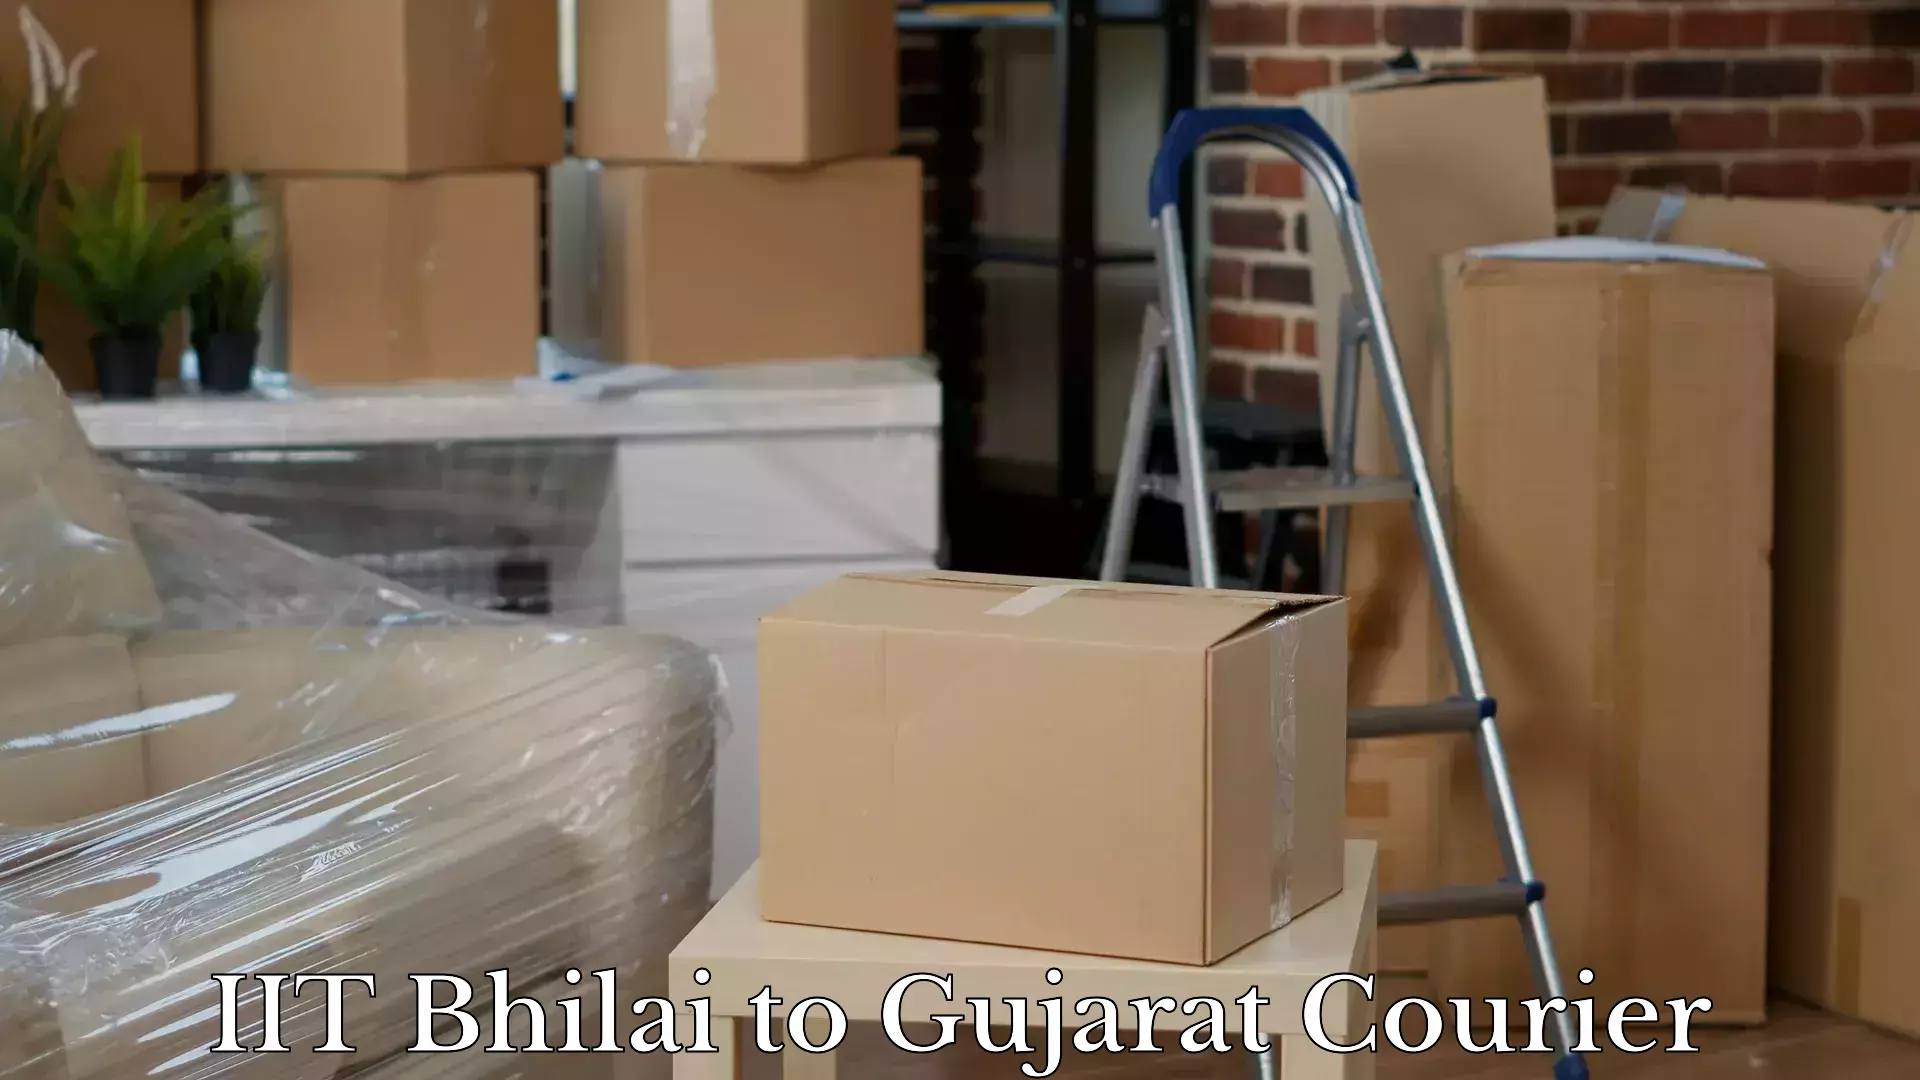 Baggage transport management IIT Bhilai to Gujarat